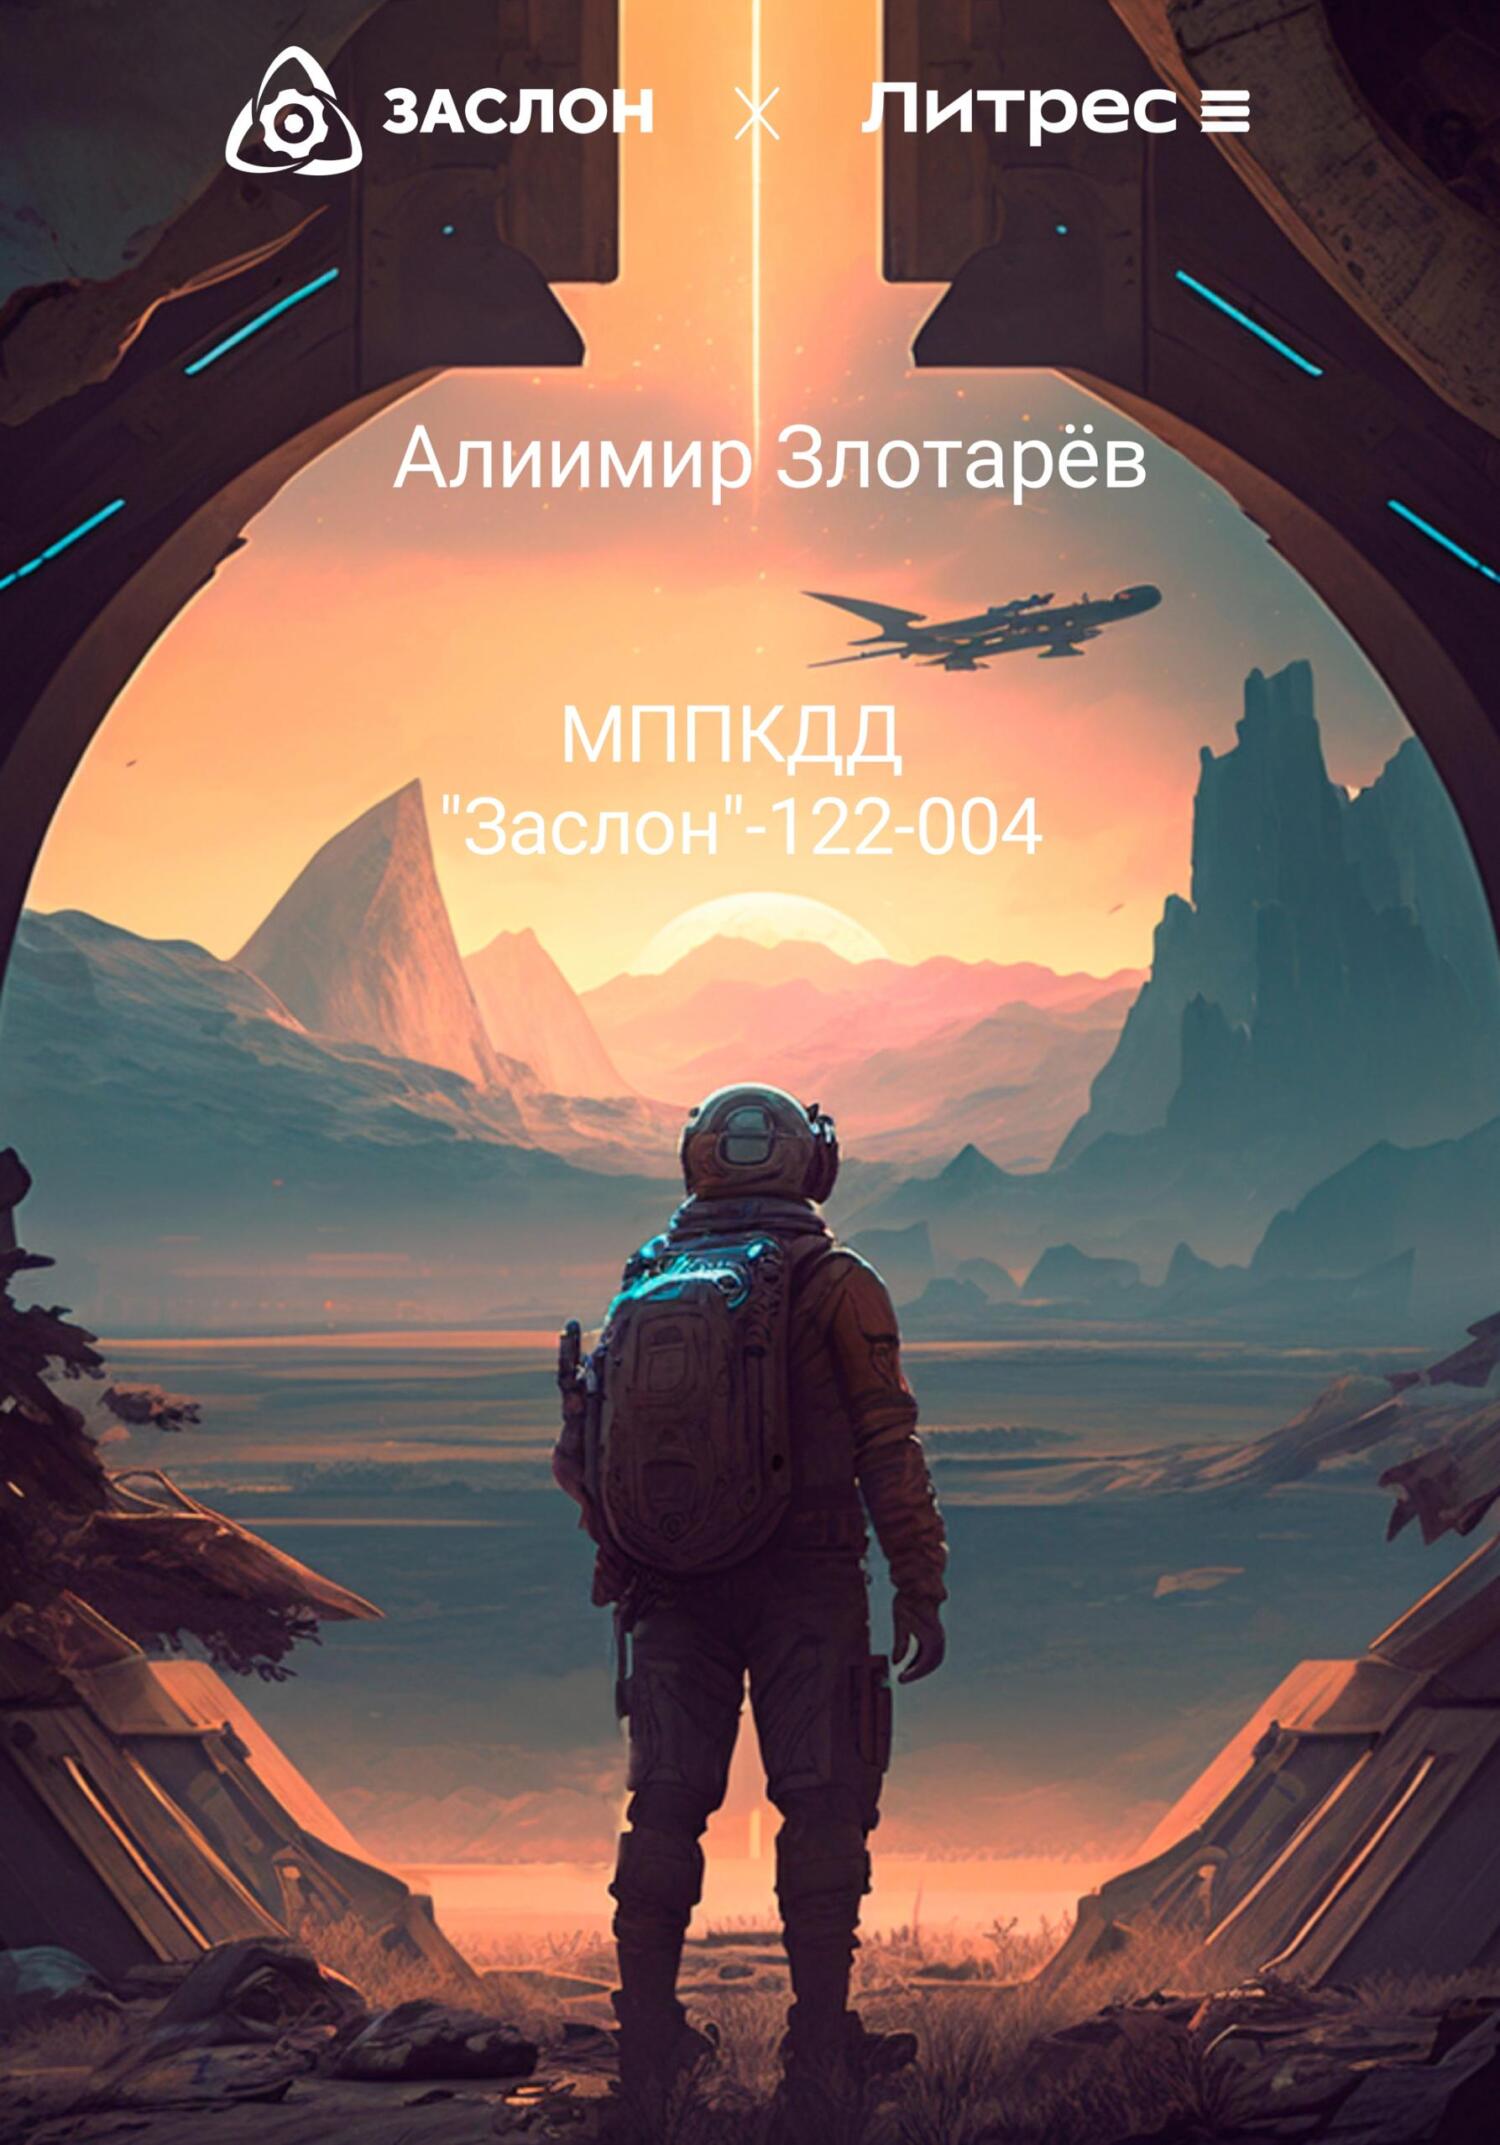 МППКДД АО «Заслон»-122-004 - Алиимир Злотарёв